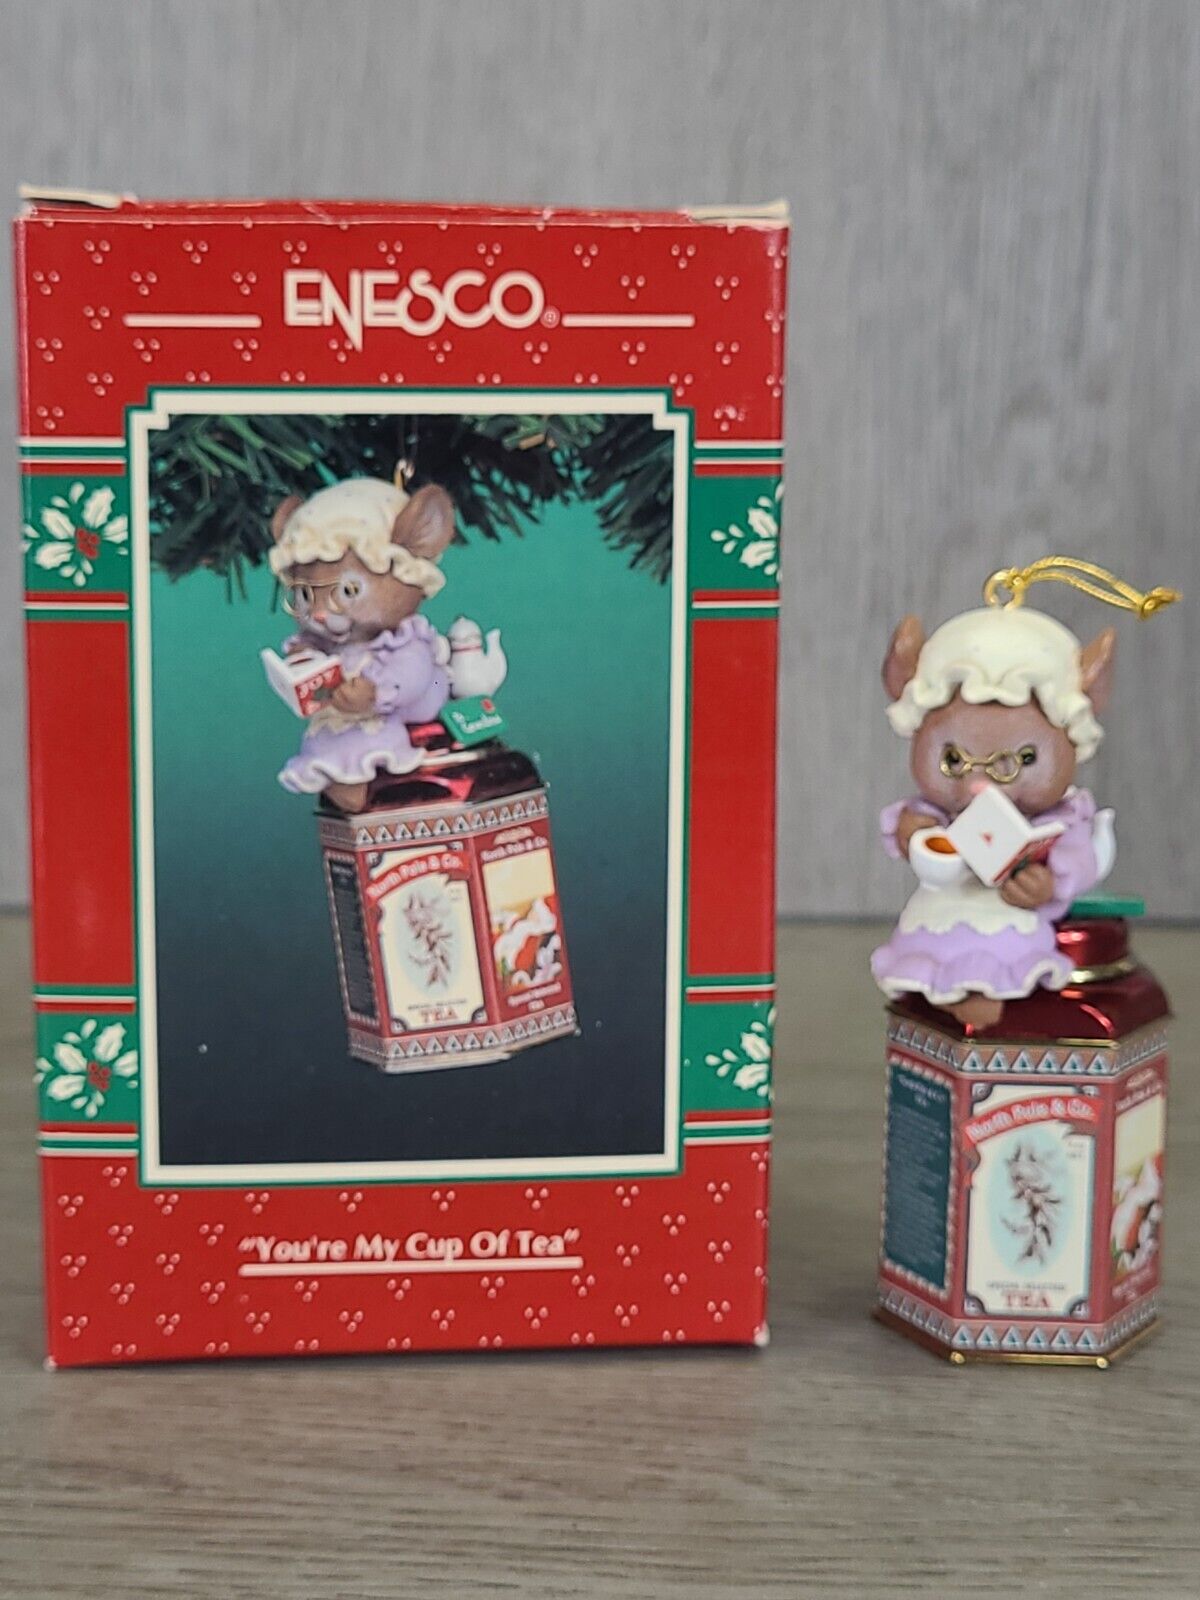 ENESCO TREASURY 1995 Christmas Ornament YOU'RE MY CUP OF TEA Grandma Mouse VTG